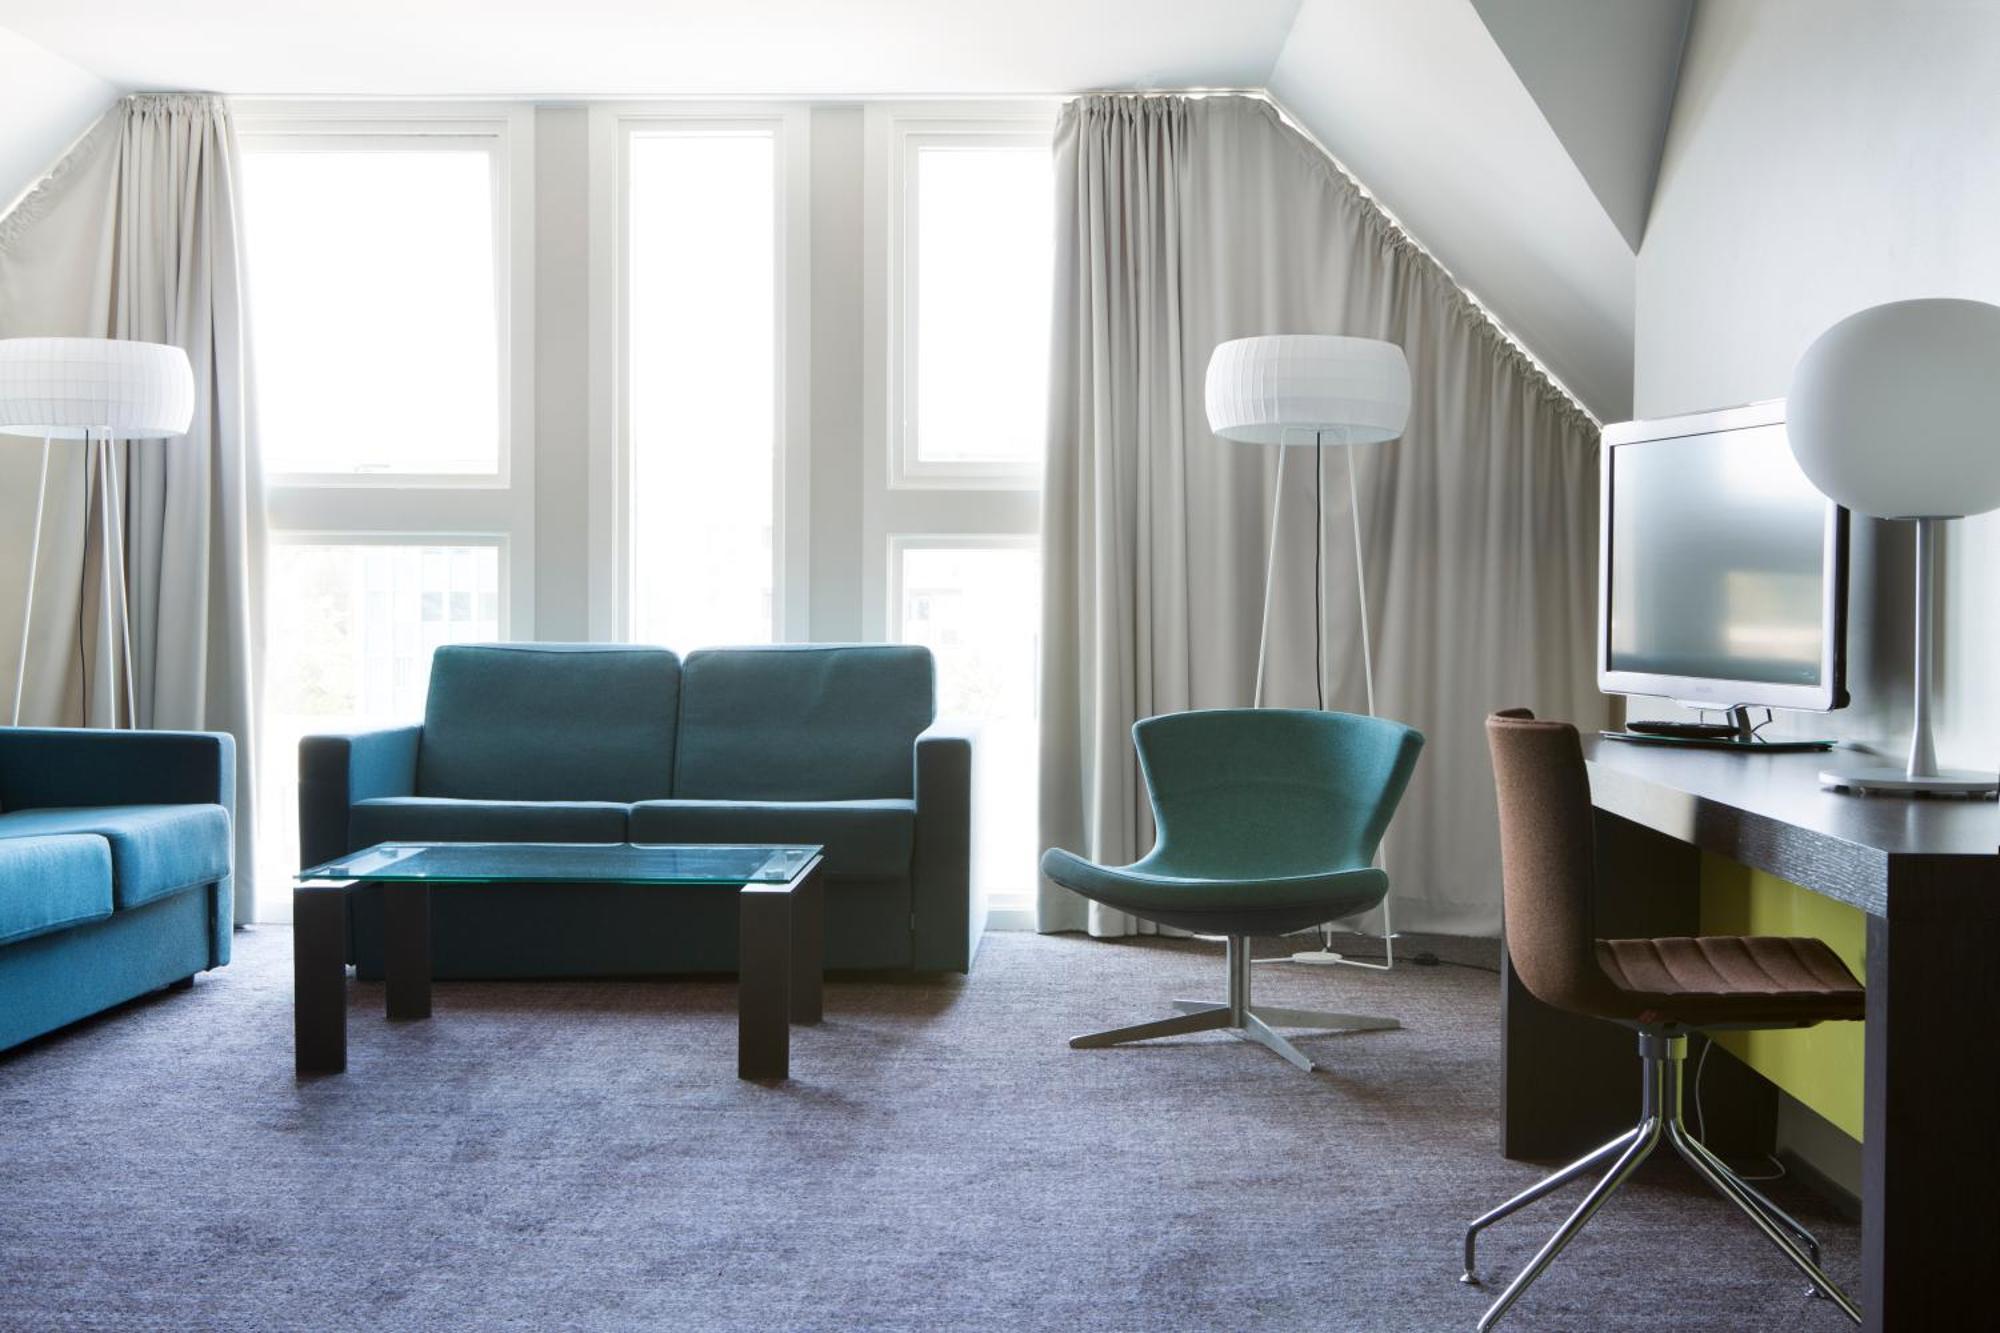 Comfort Hotel Kristiansand Eksteriør bilde